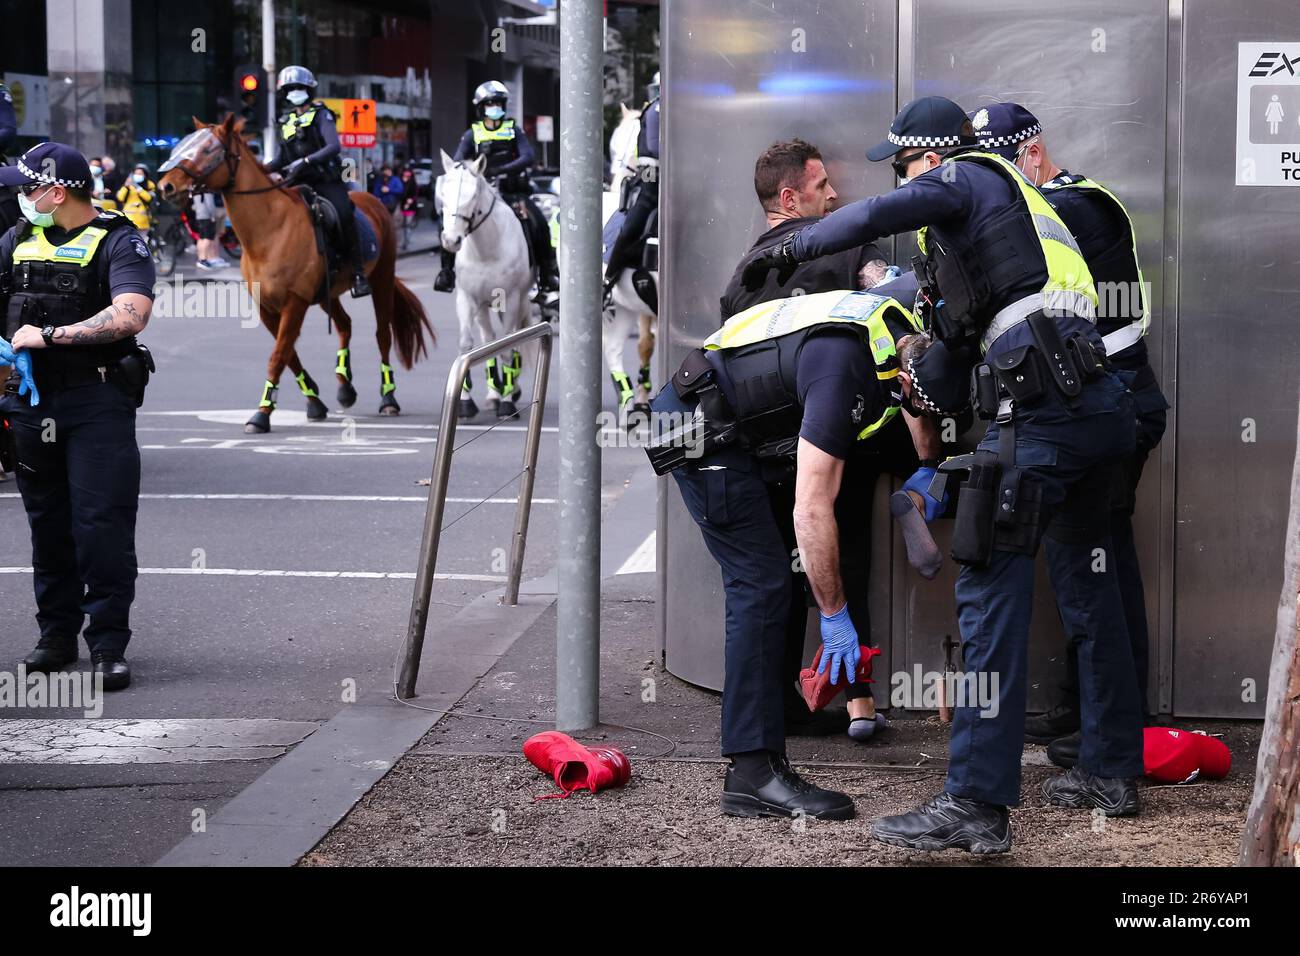 MELBOURNE, VIC - AUGUST 21: Die Polizei wird dabei gesehen, wie sie einen Demonstranten festnimmt und seine Schuhe während des Protests zur Freiheit am 21. August 2021 in Melbourne, Australien, auf Drogen überprüft. Als Reaktion auf die COVID-19-Beschränkungen der Regierungen und die fortgesetzte Aufhebung der Freiheiten werden im ganzen Land Freiheitsproteste durchgeführt. Stockfoto